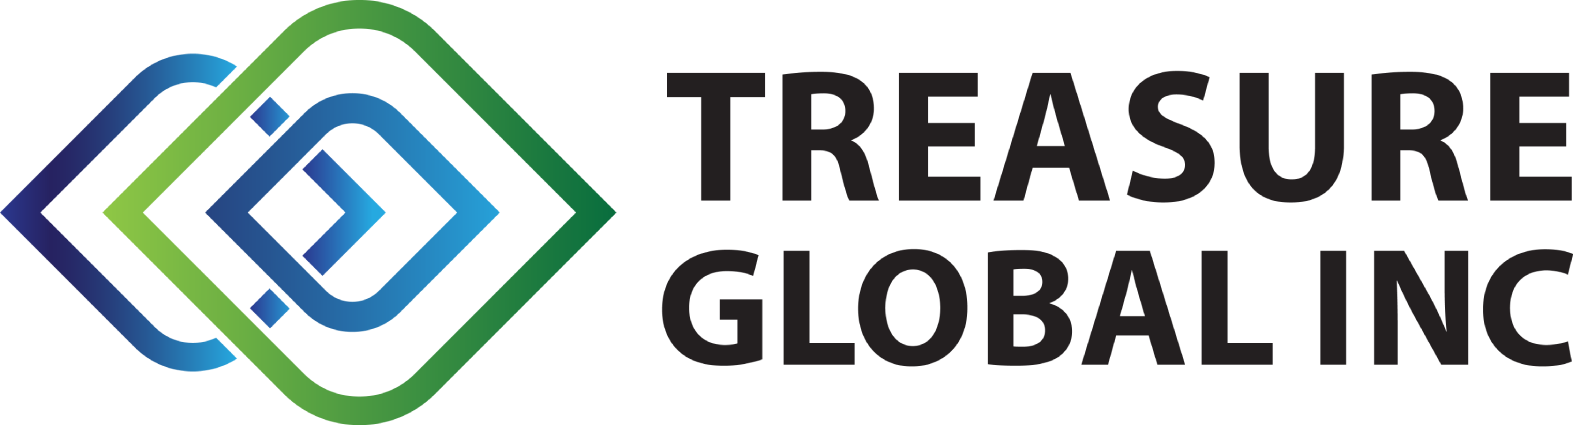 Treasure Global logo large (transparent PNG)